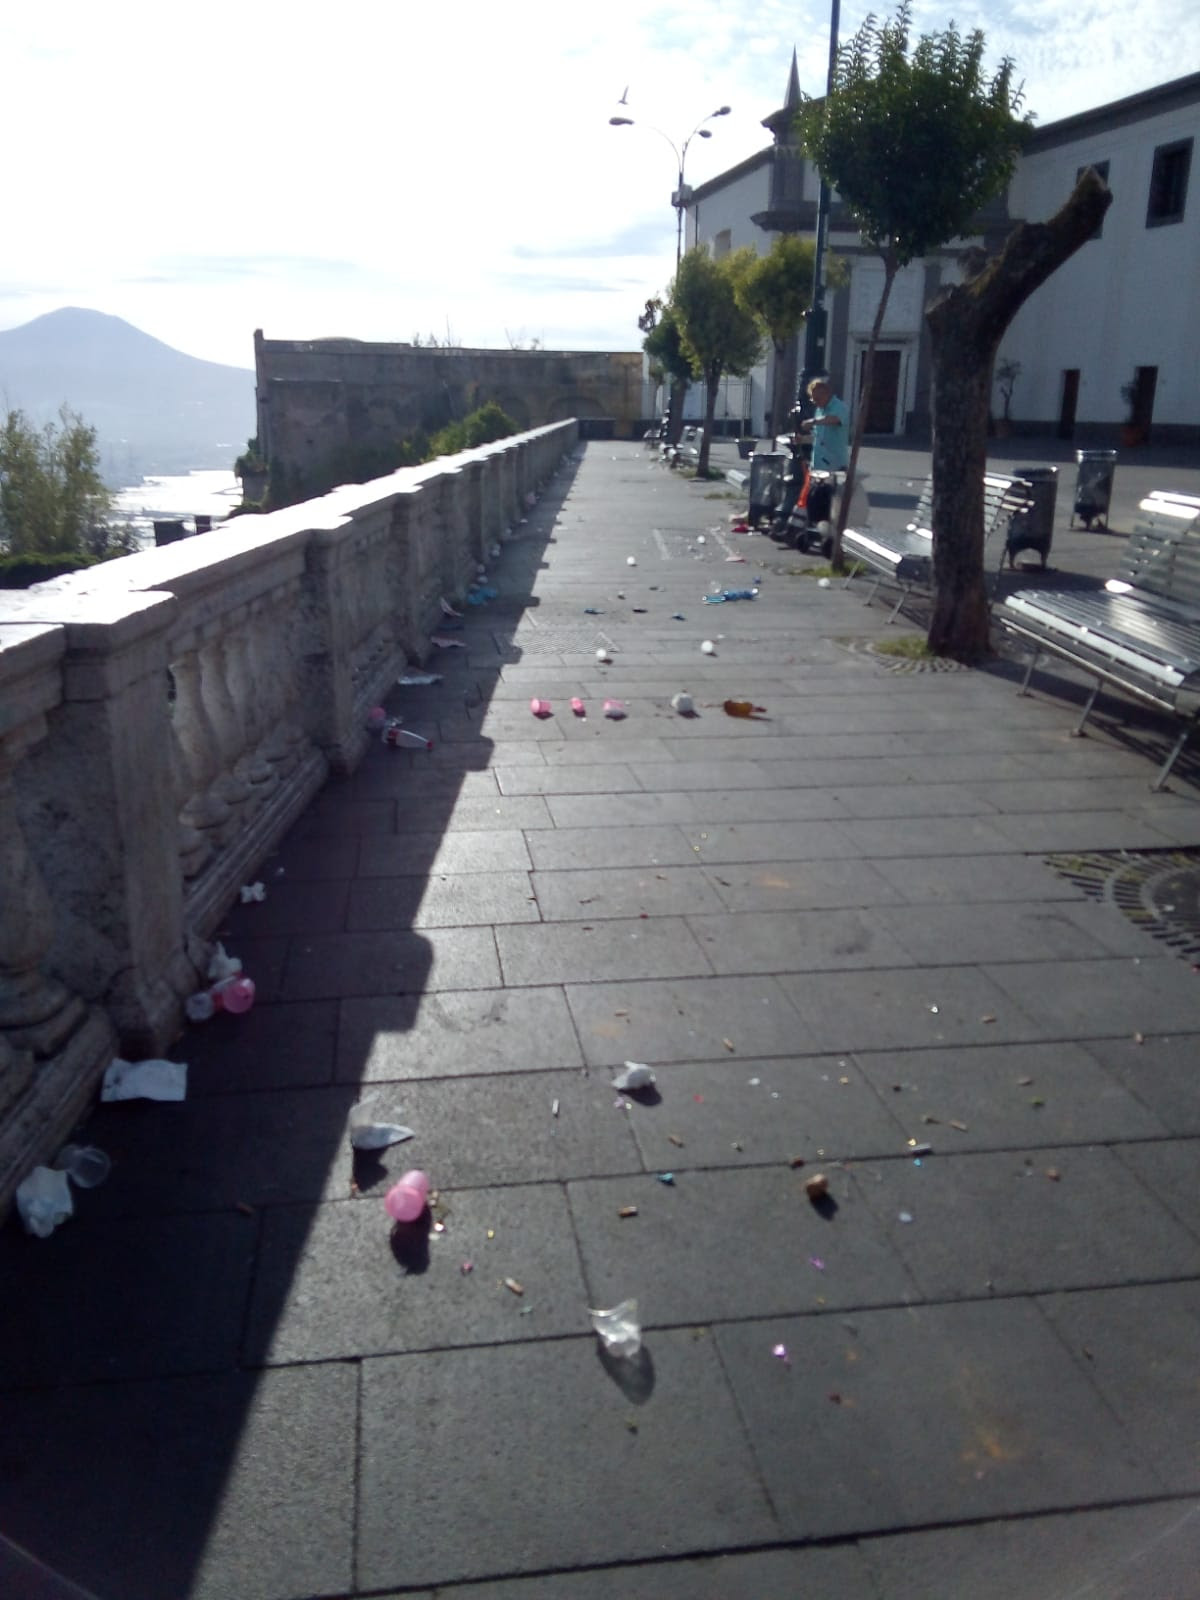 Napoli, incivili in azione a San Martino: belvedere sporcato dai resti di torte e festeggiamenti